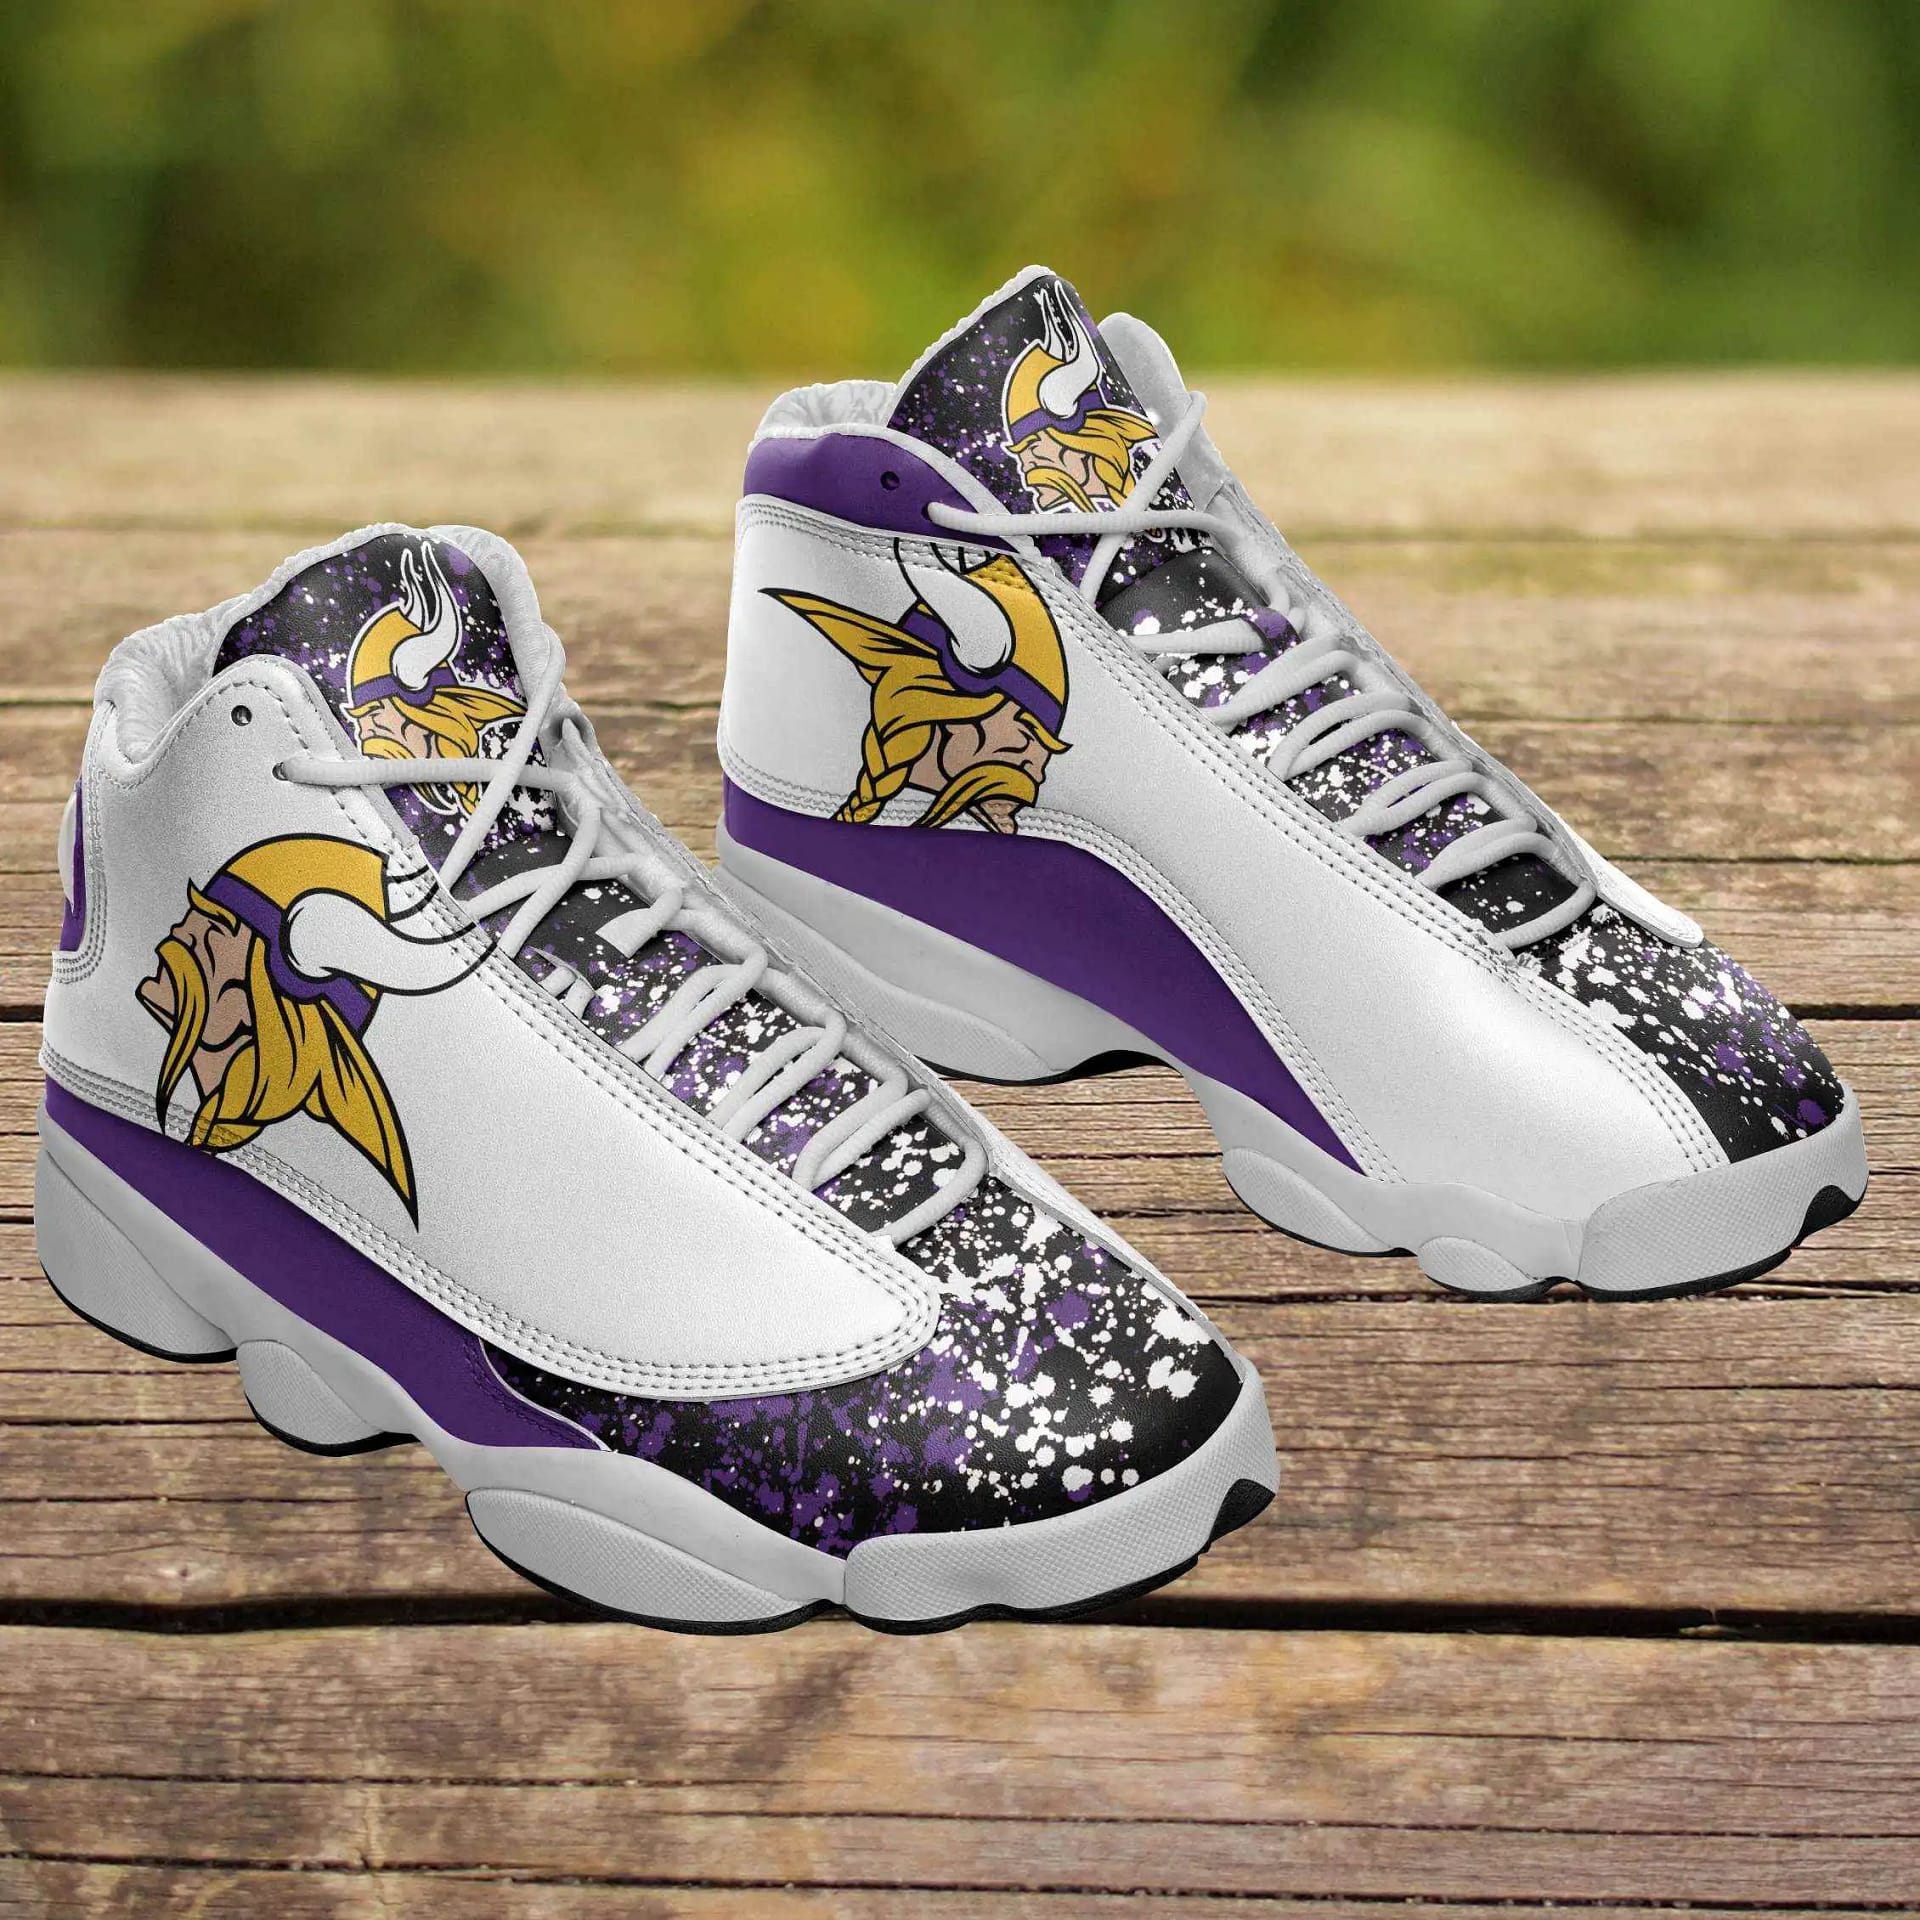 Minnesota Vikings Air Jordan Shoes